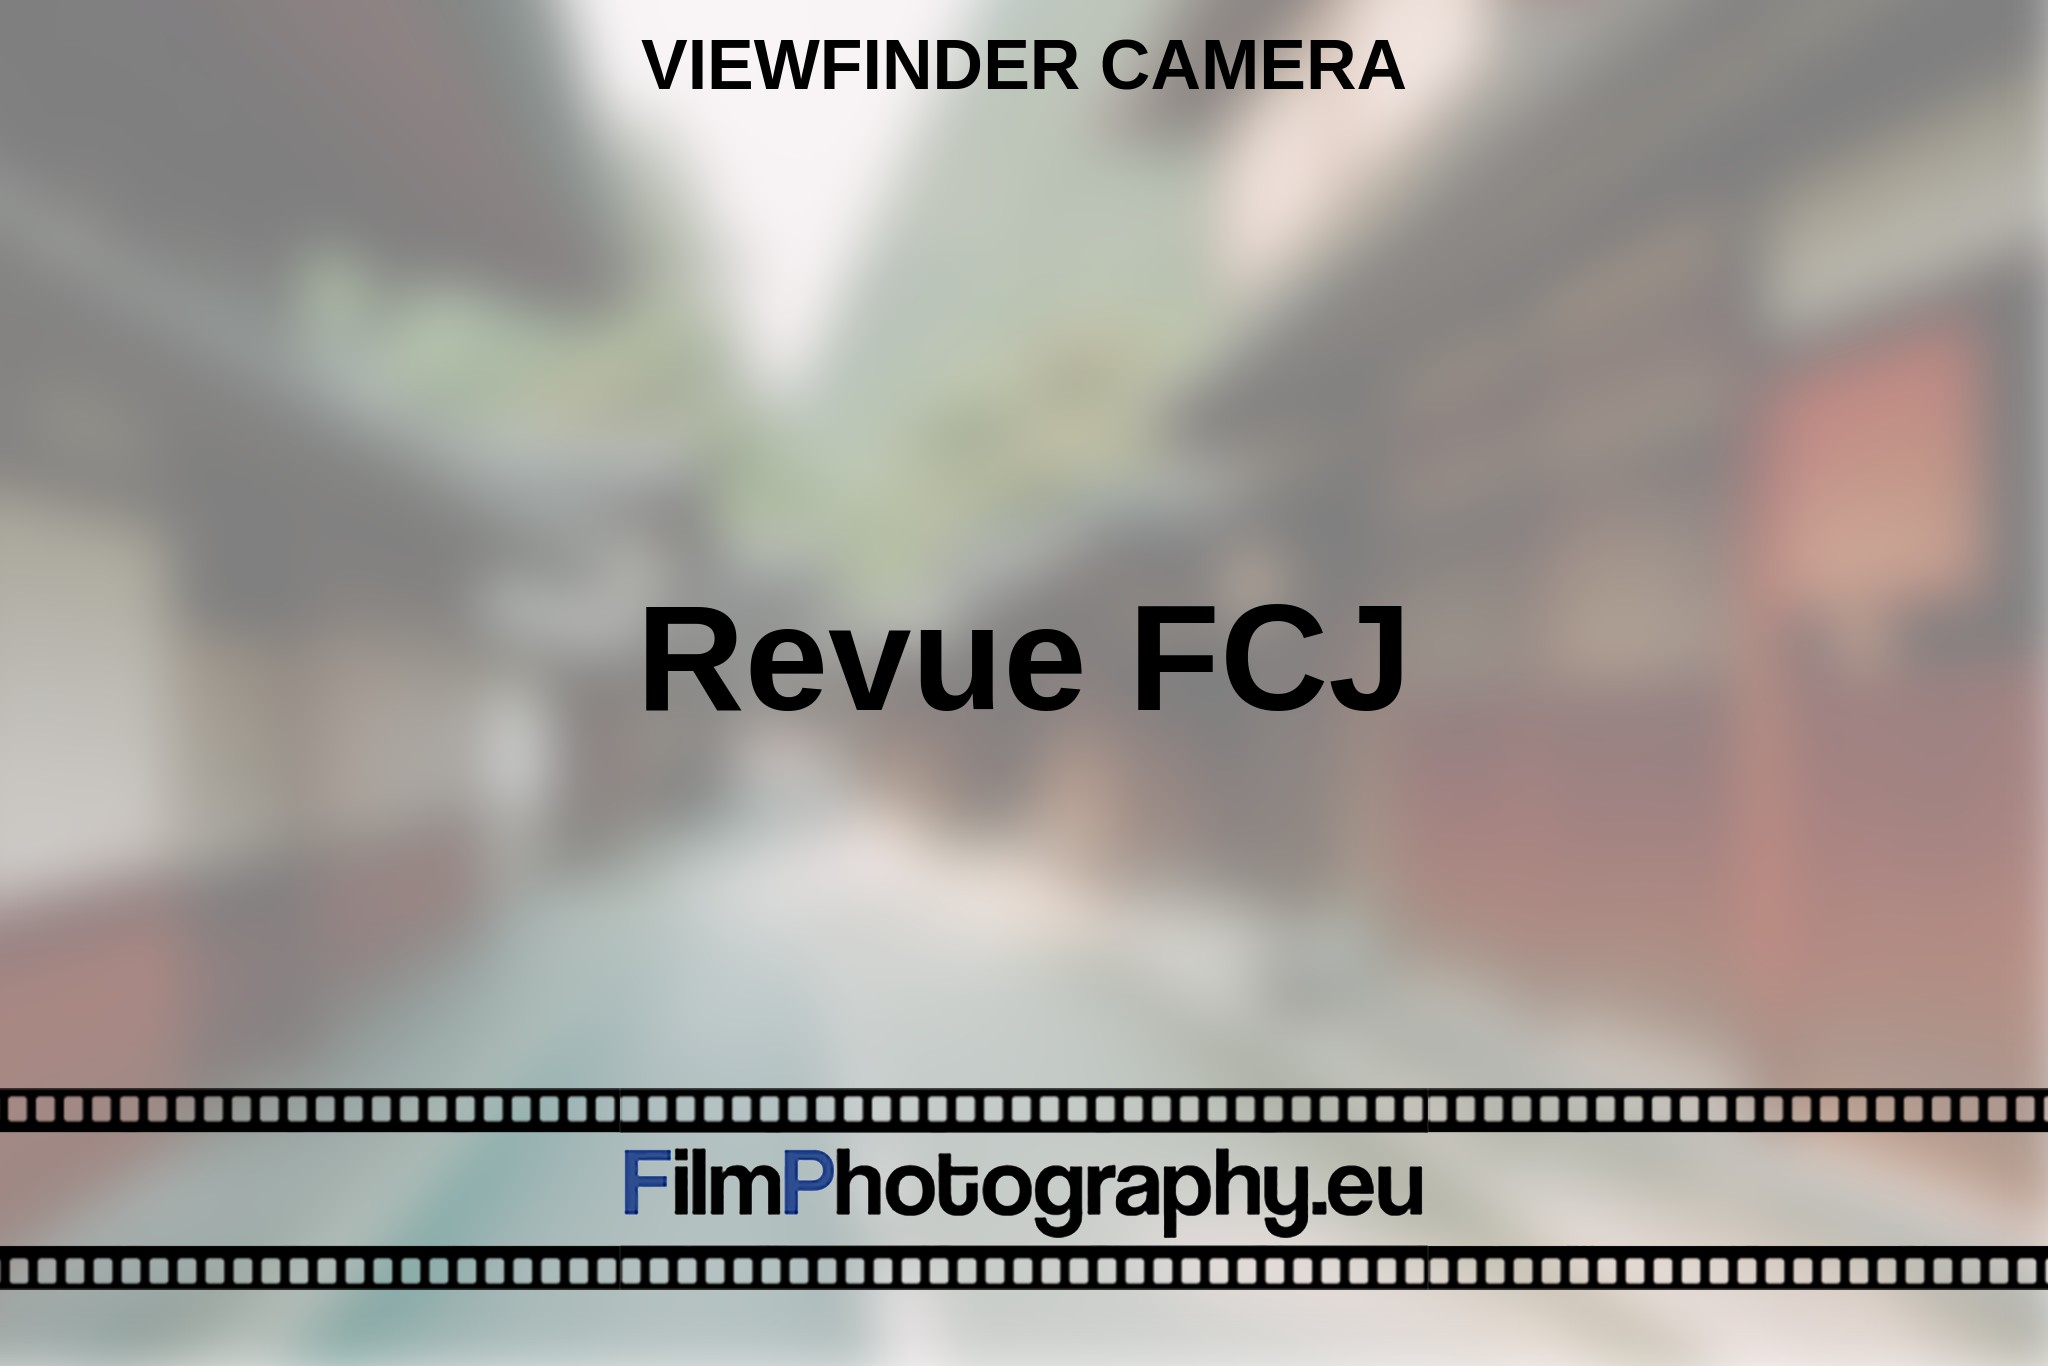 revue-fcj-viewfinder-camera-en-bnv.jpg